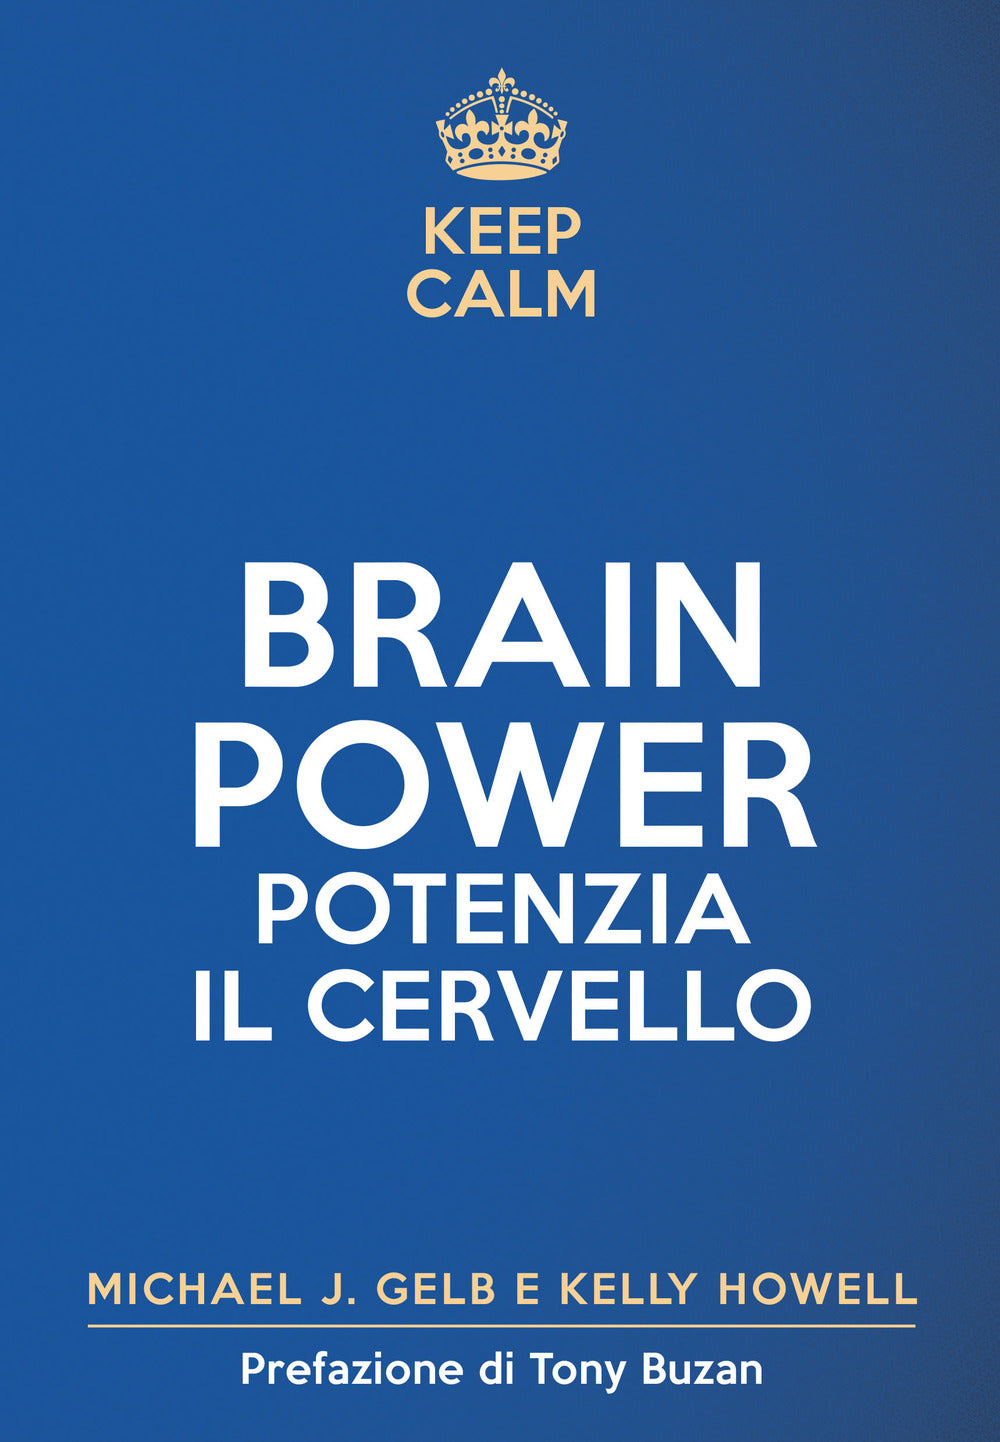 Keep calm. Brain power. Potenzia il cervello.